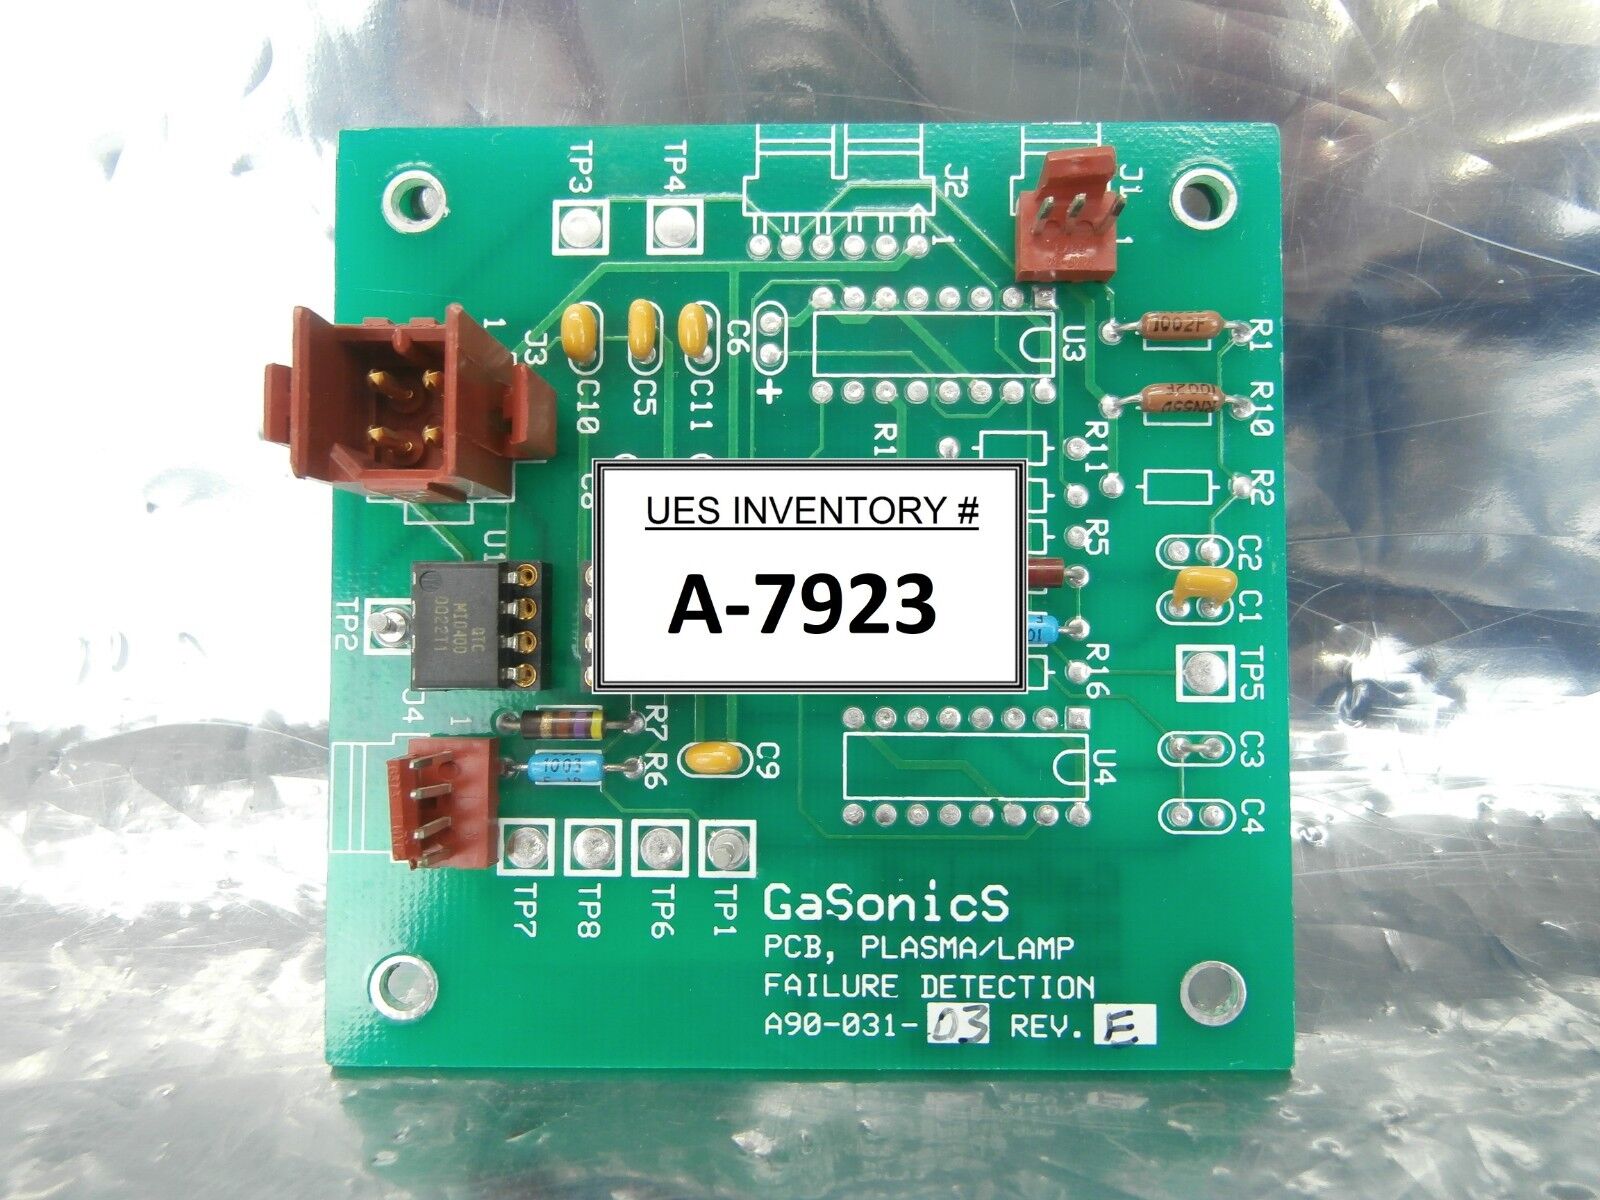 GaSonics A90-031-03 PLASMA/LAMP Failure Detection PCB Rev. E Used Working